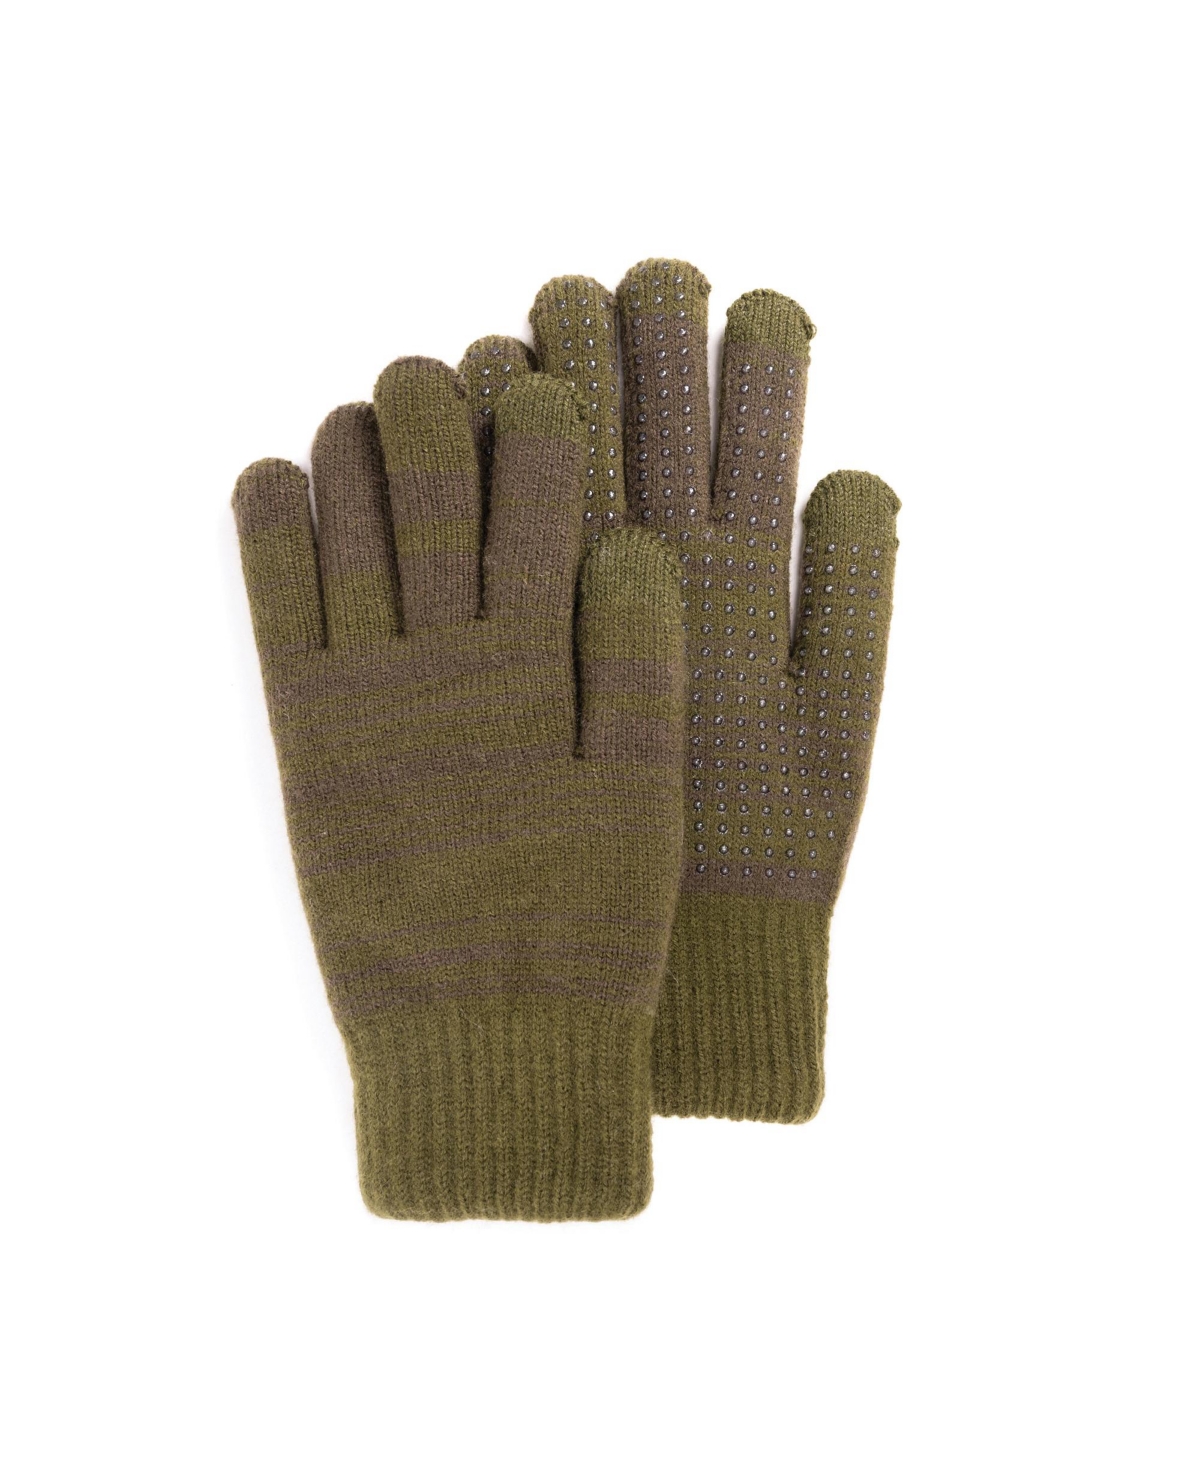 Men's Unisex Heat Retainer Gloves, Green, One Size - Green